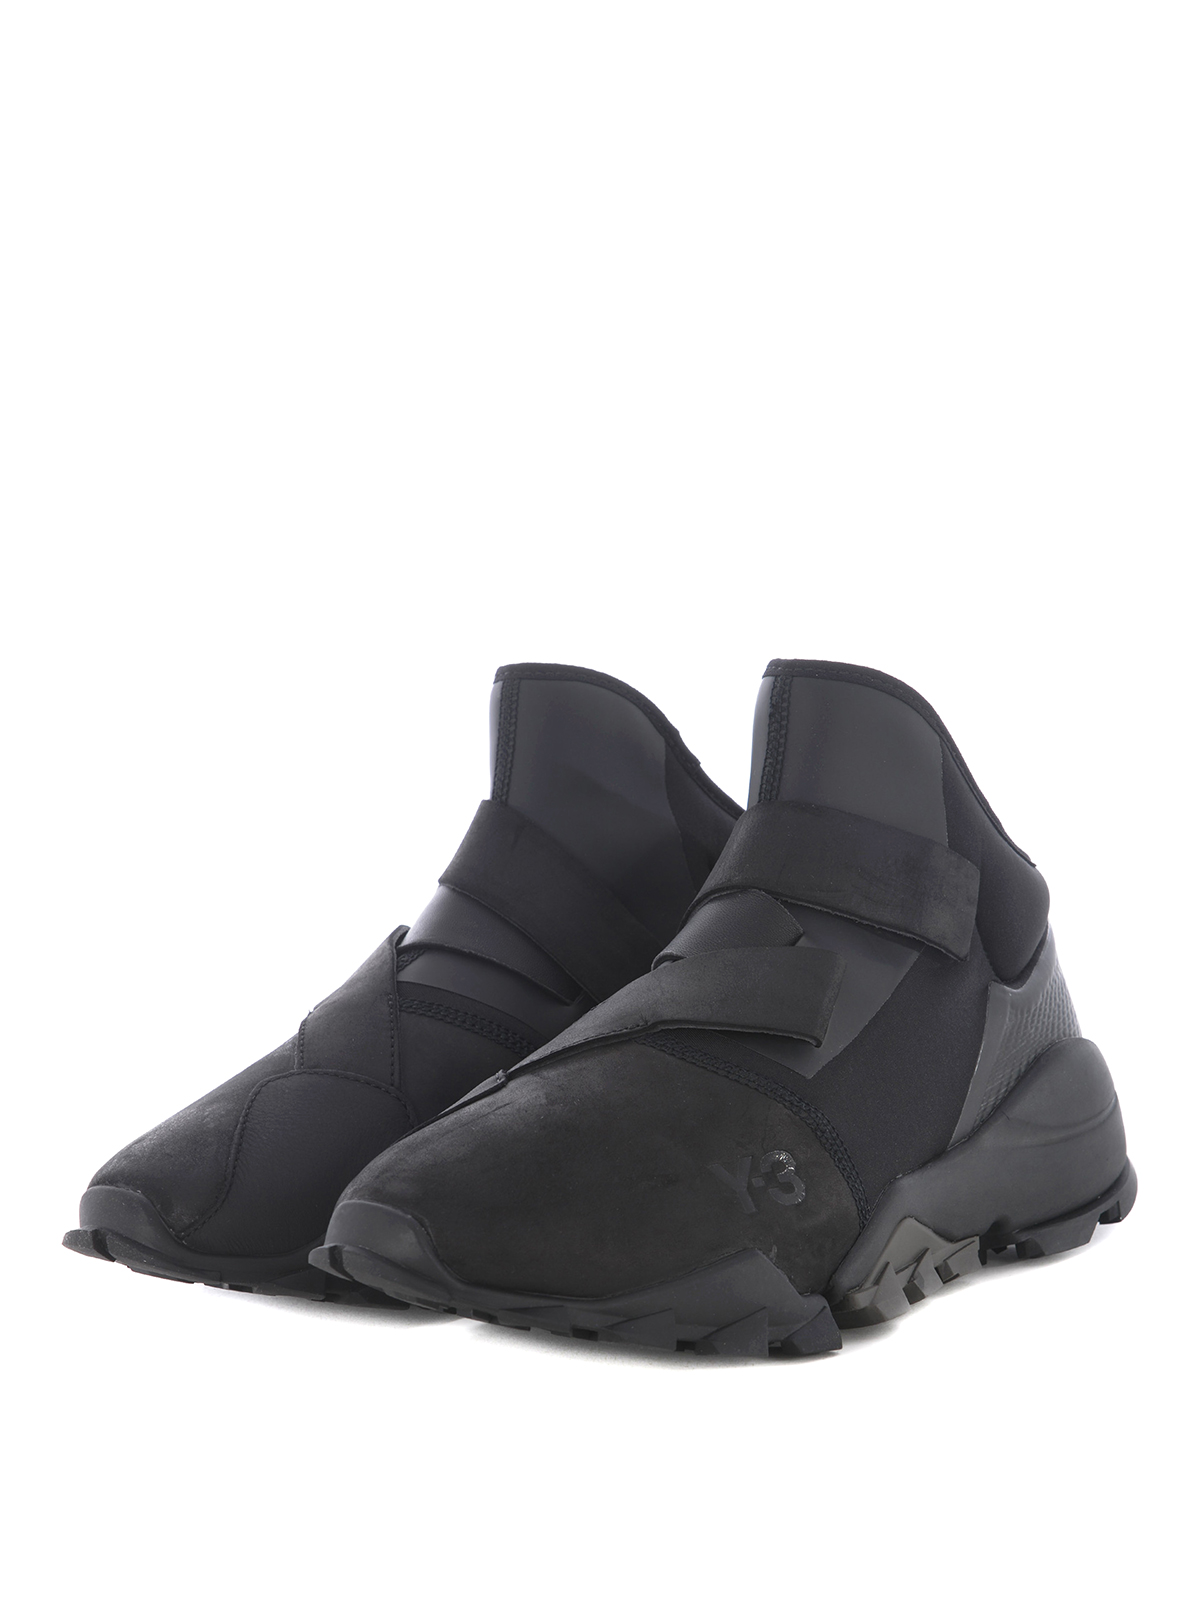 Zapatillas Adidas Y-3 - Zapatillas - | iKRIX tienda online